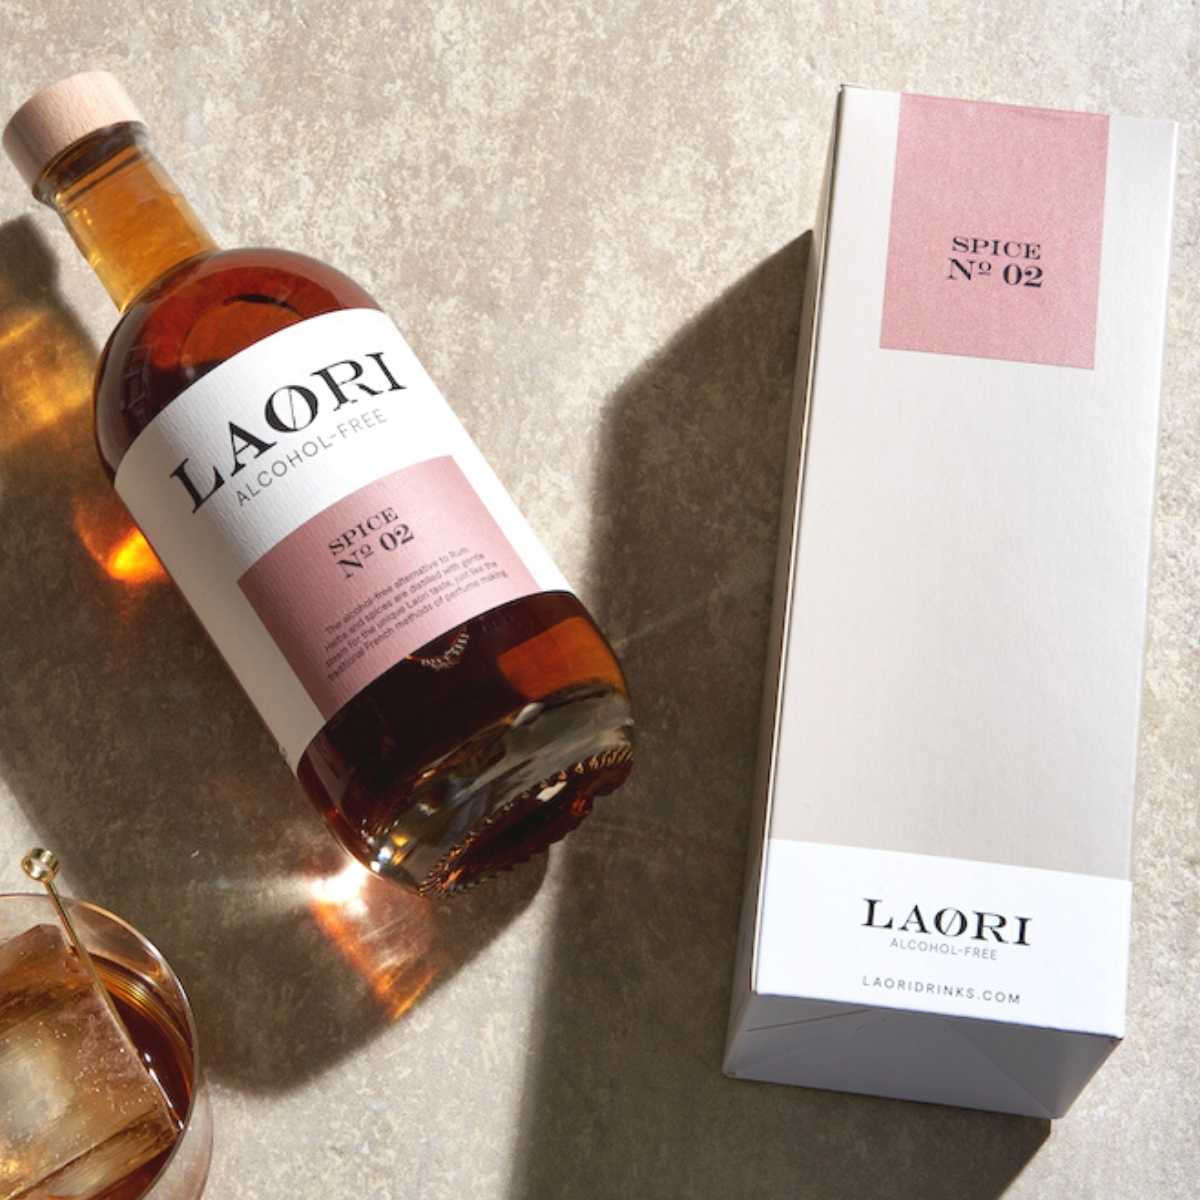 Laori Spice No 02 (0,5 l) - en una elegante caja de regalo